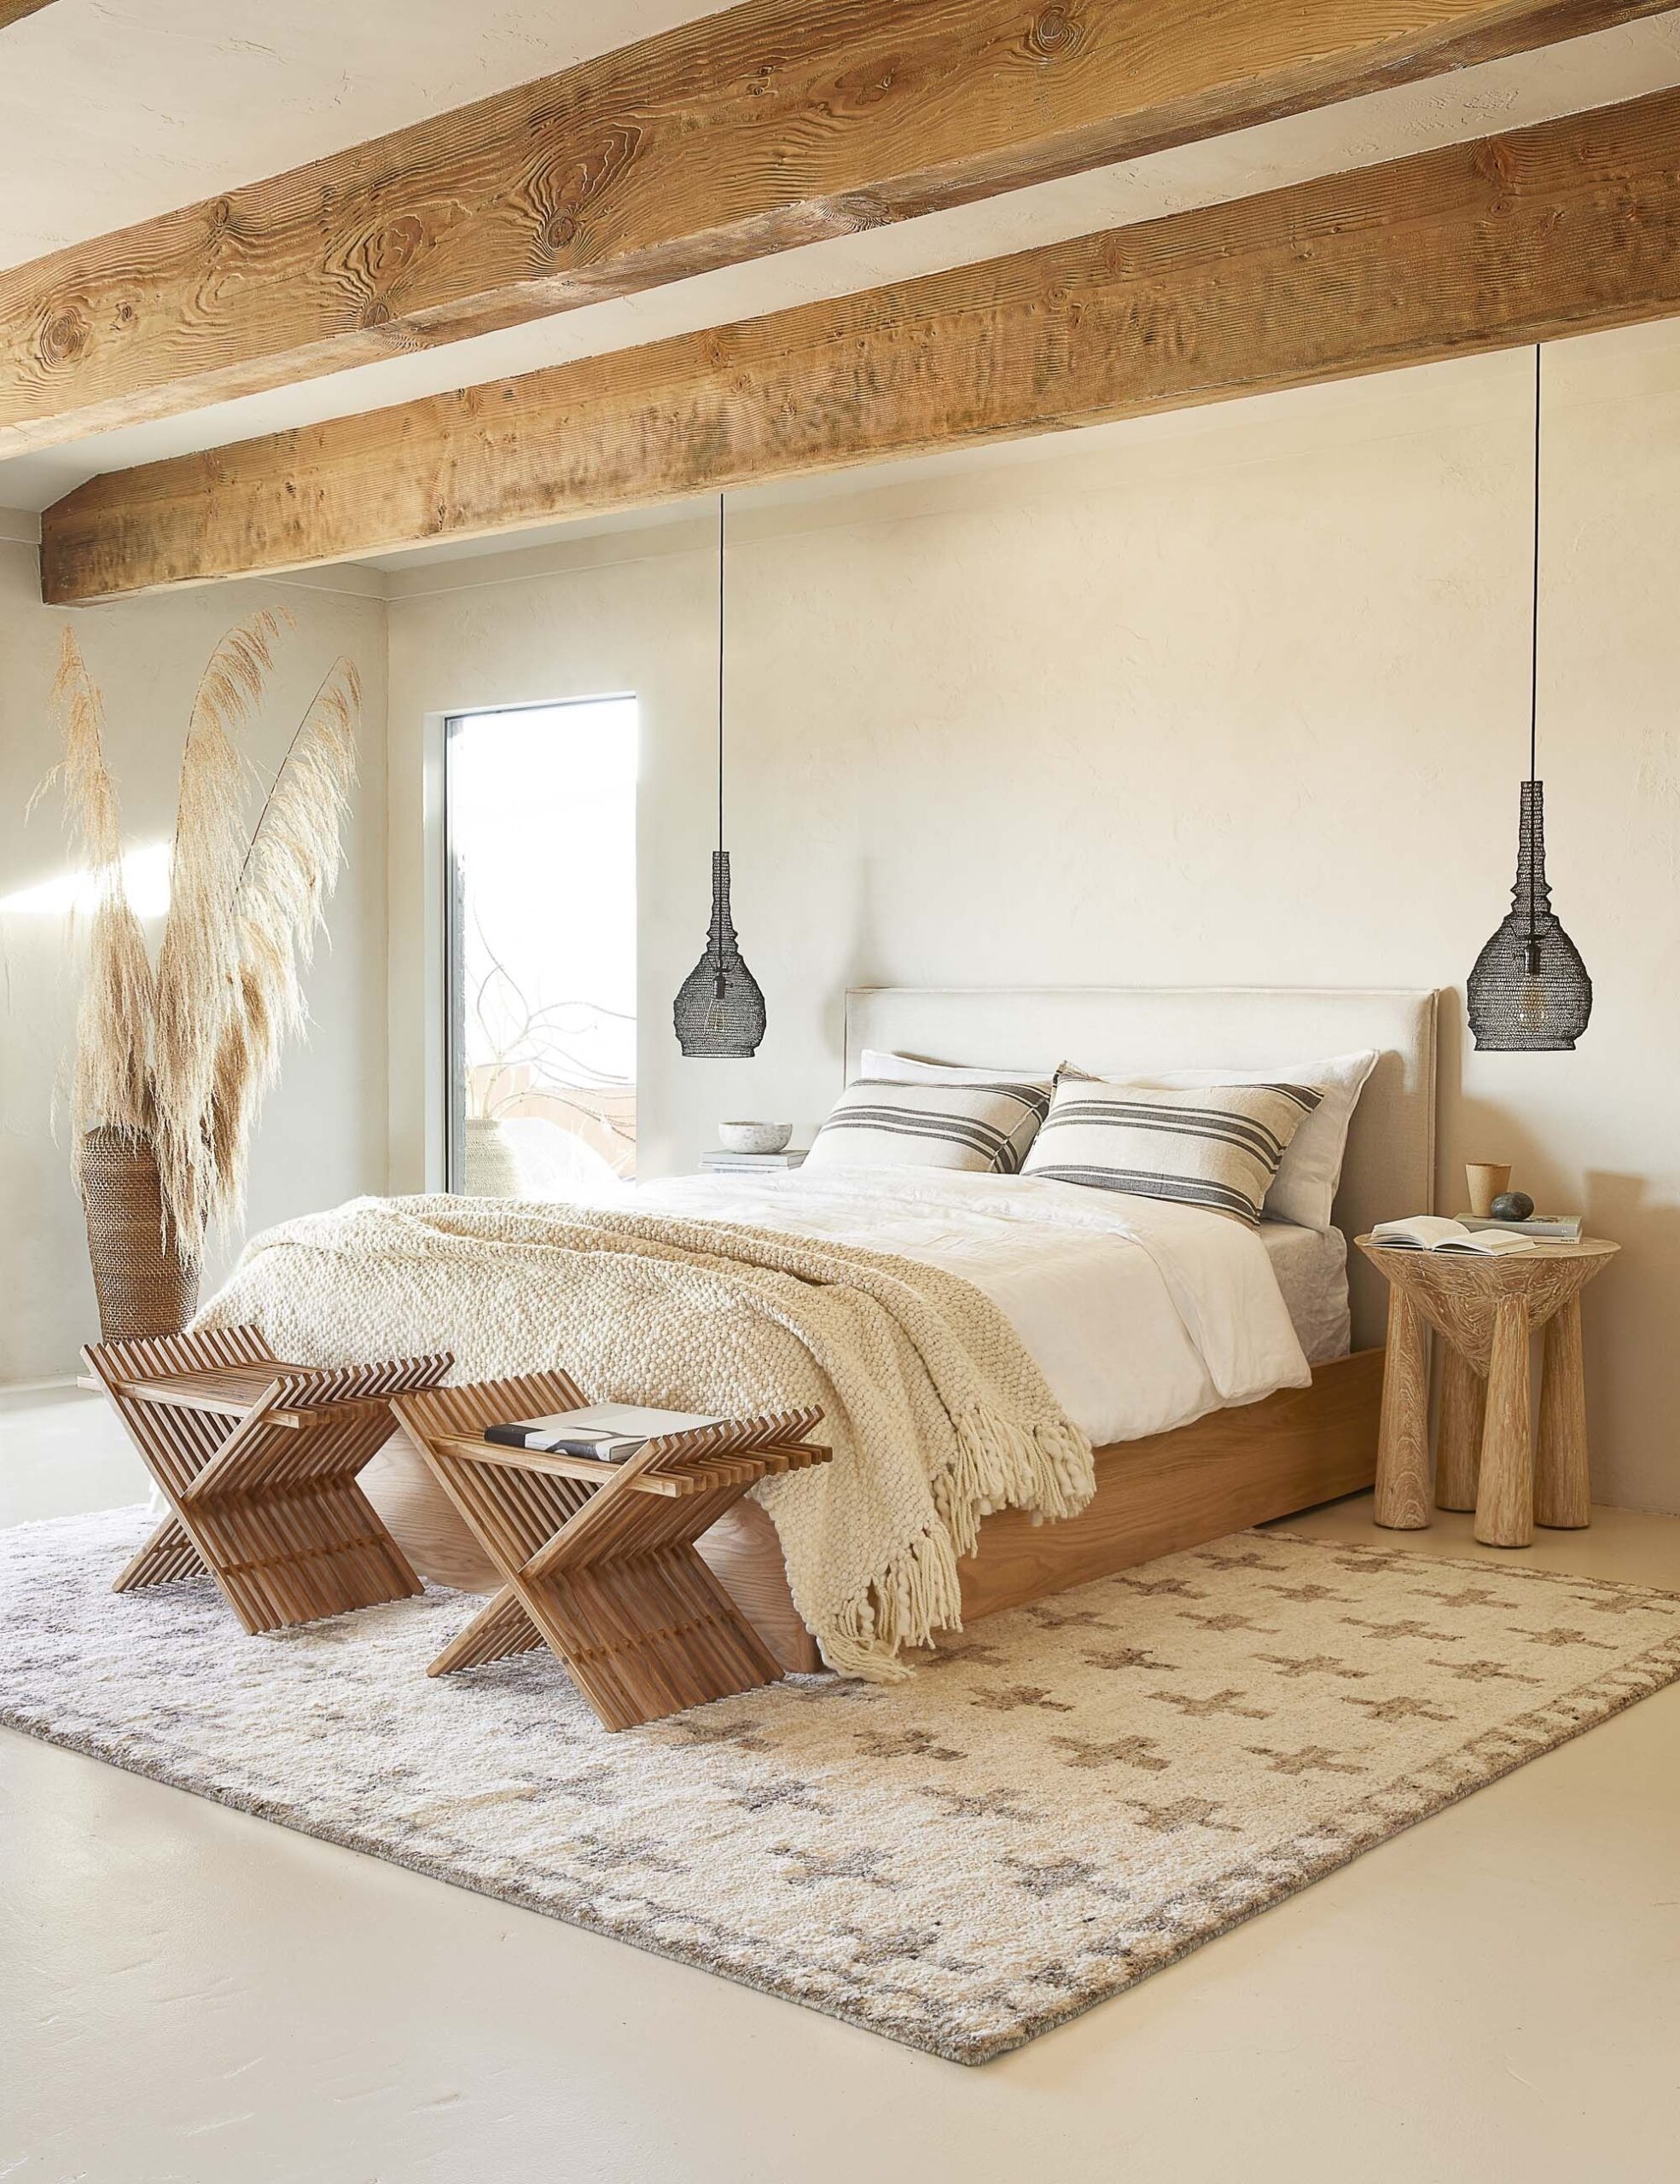 превосходная в стиле минимализм спальня